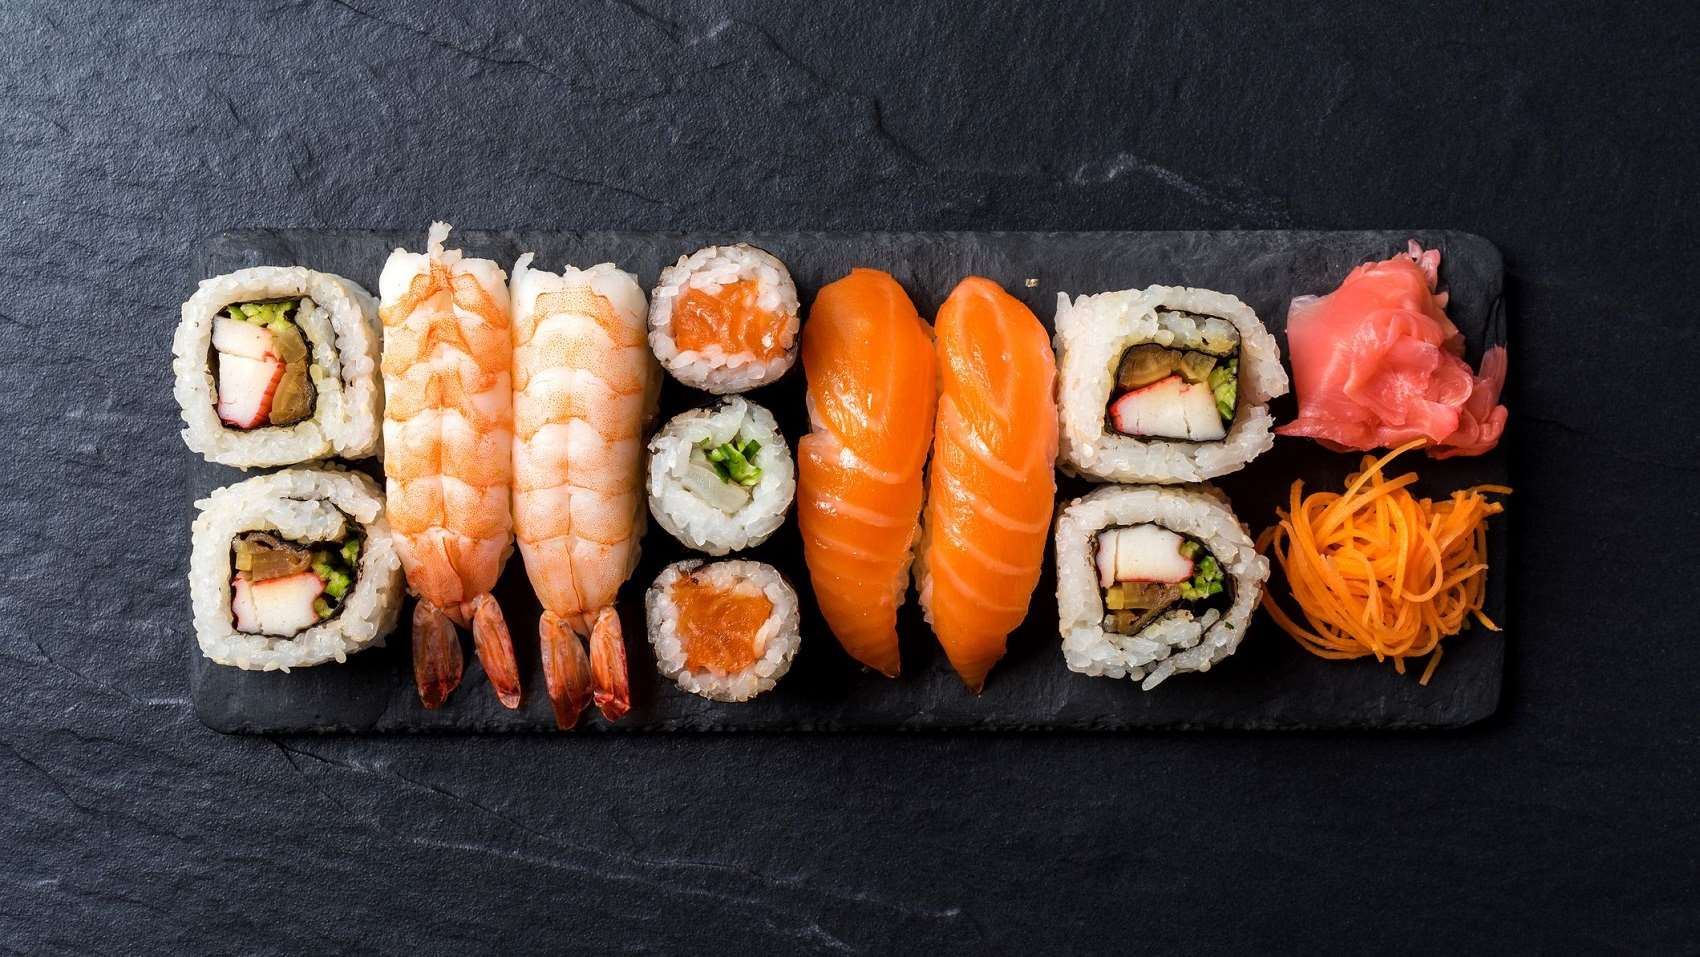 Το διασημότερο εστιατόριο σούσι στον κόσμο έχασε τα τρία αστέρια Michelin – Τι συνέβη;